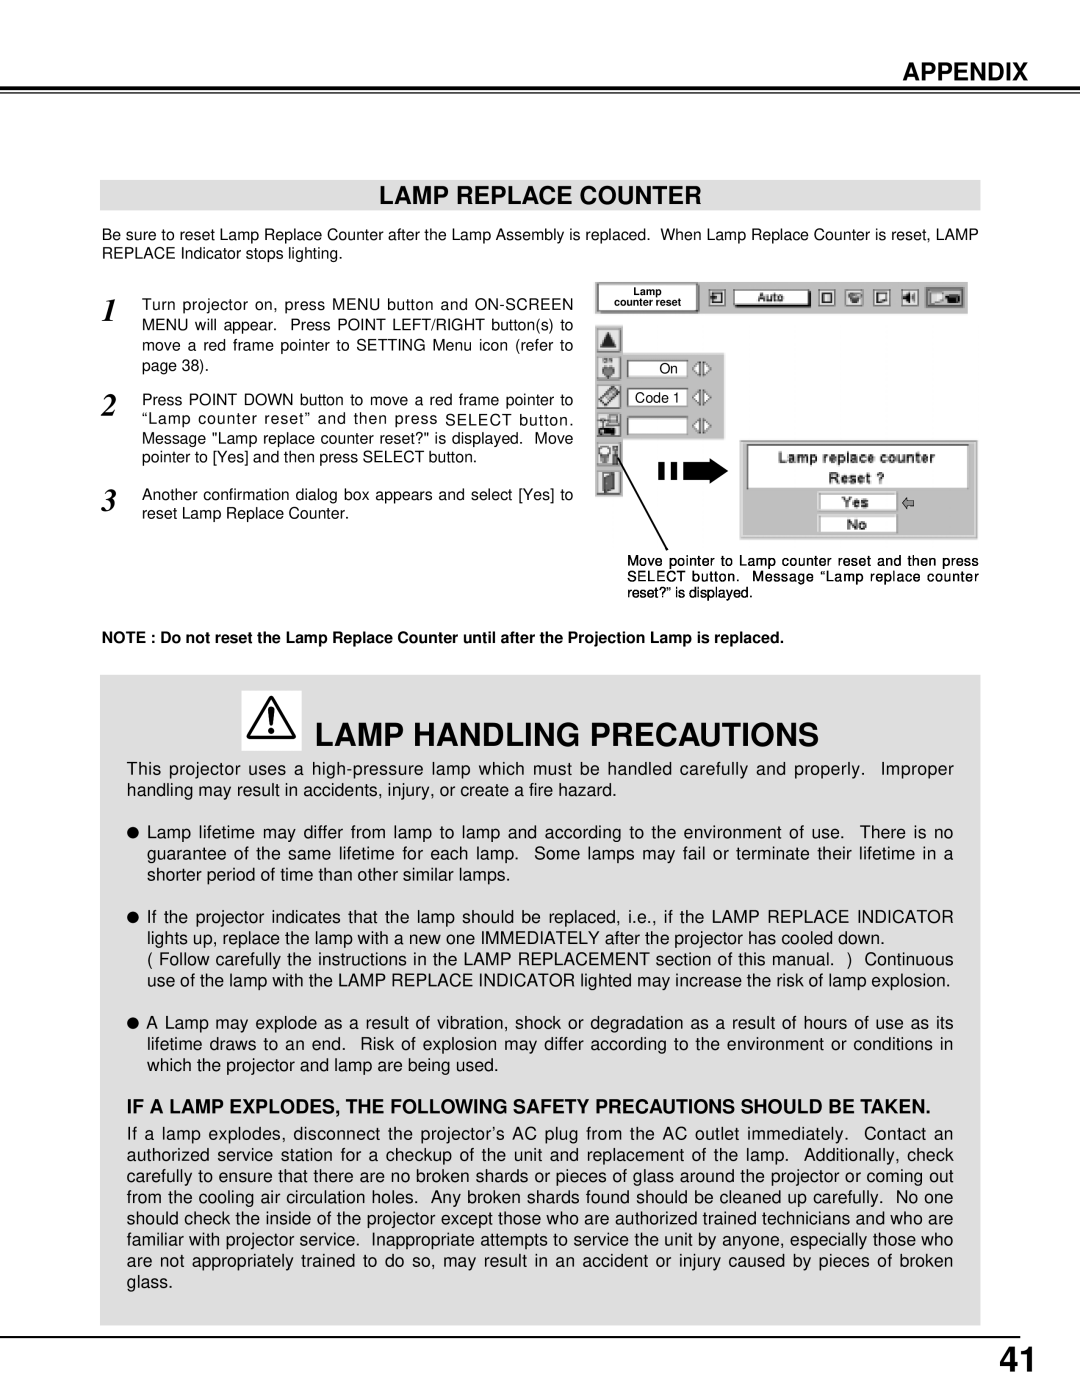 Sanyo PLV-70 owner manual Appendix Lamp Replace Counter, Lamp Handling Precautions 